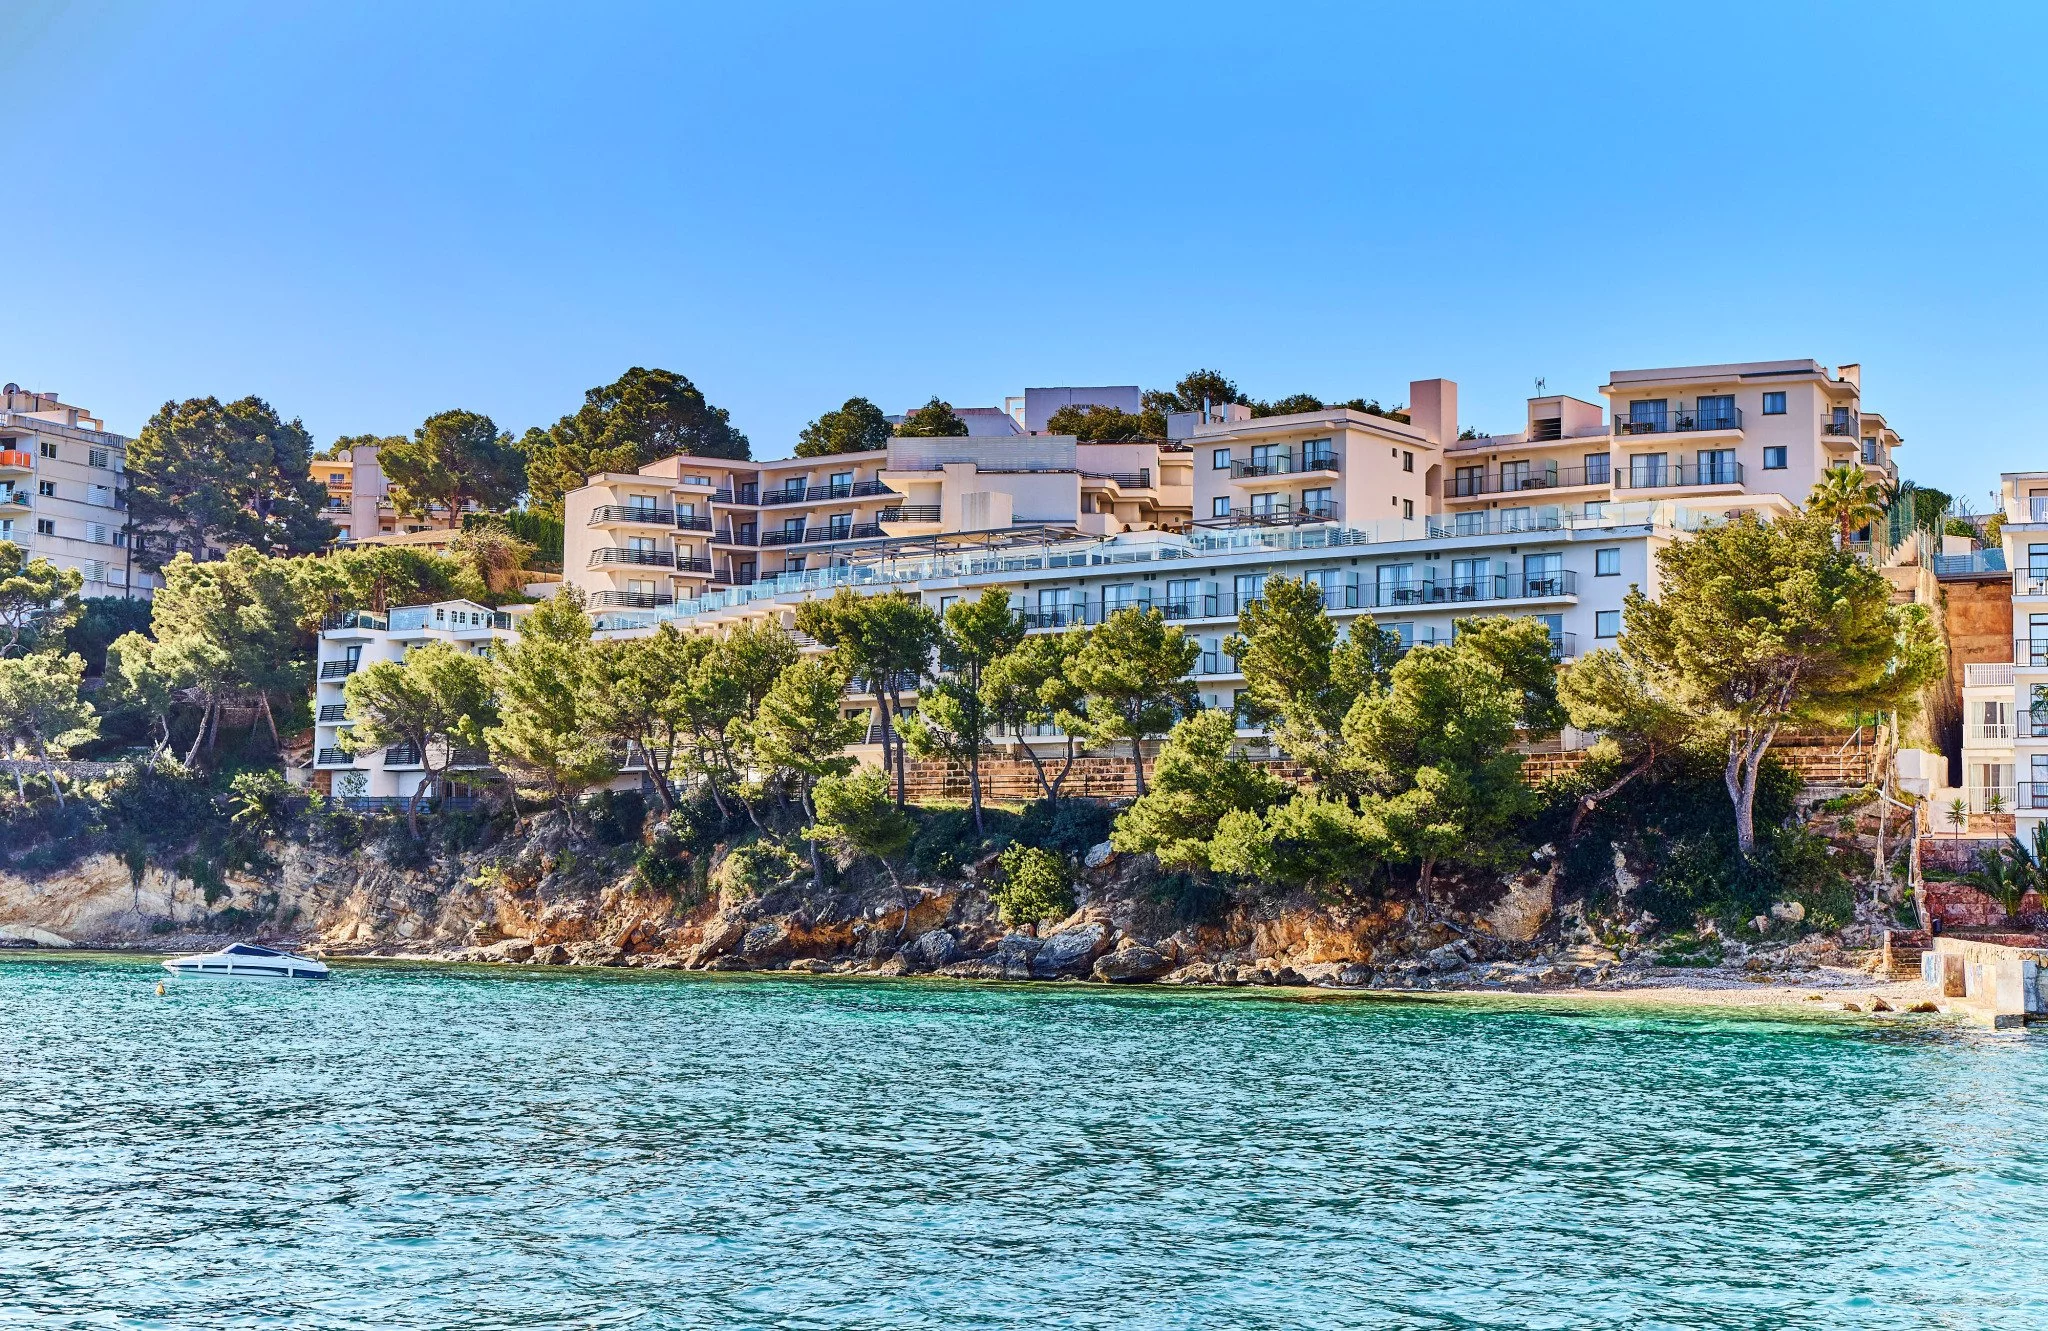 Leonardo Royal Hotel Mallorca Palmanova Bay - Buitenkant/Hotelzicht